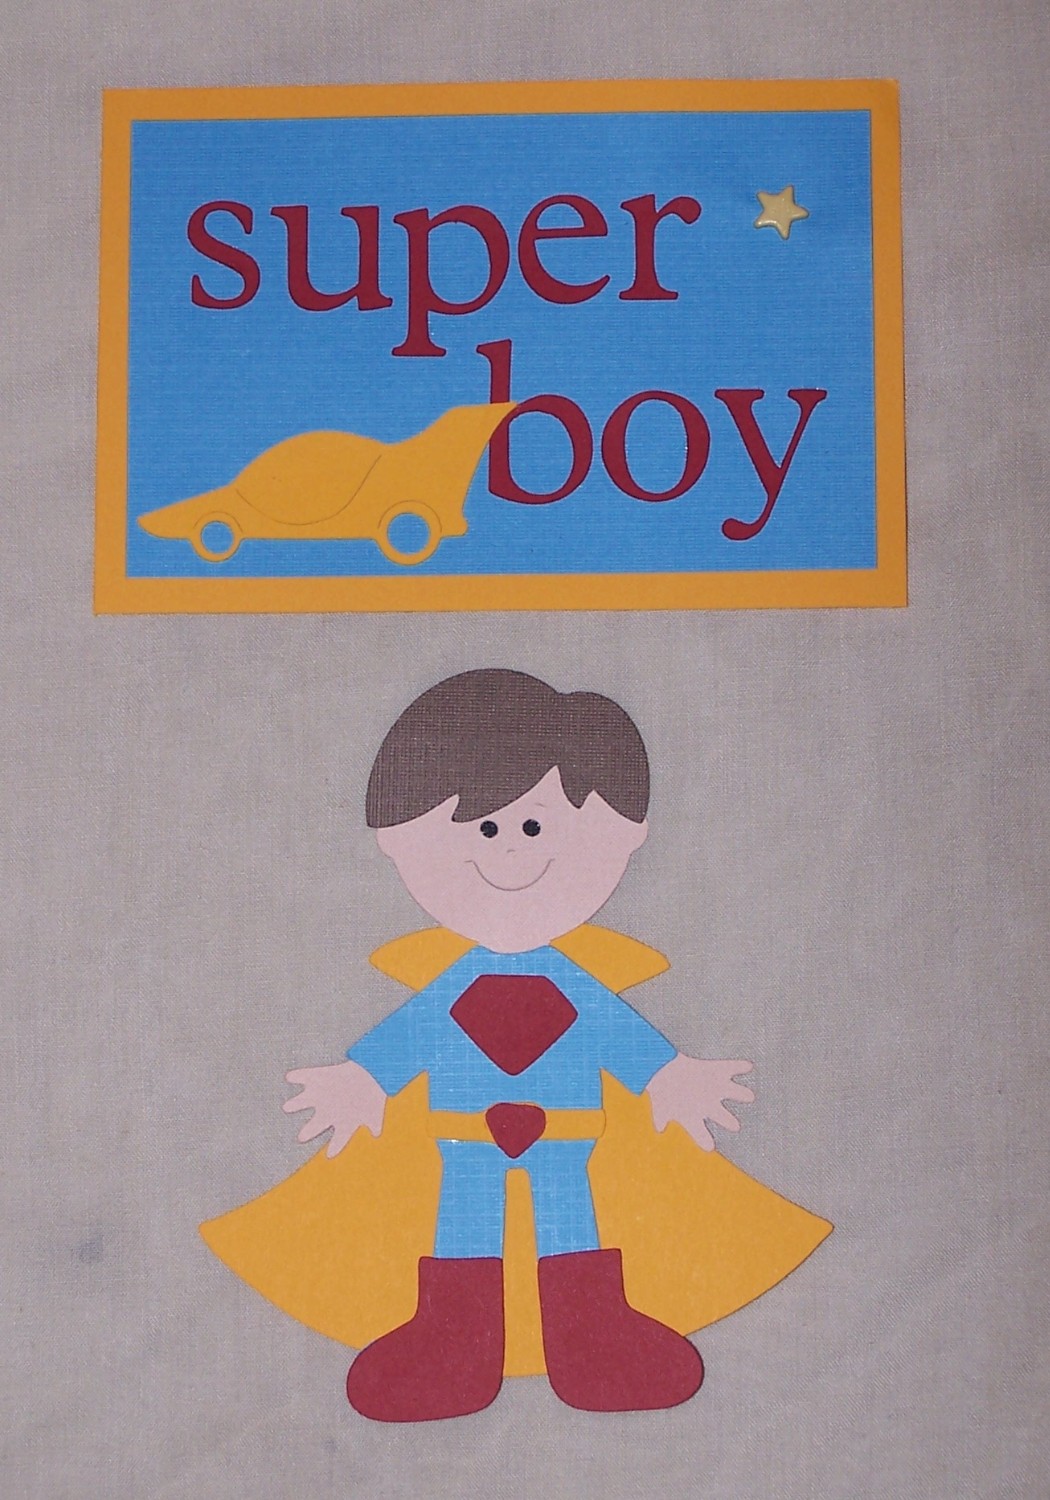 [Super+Boy.jpg]